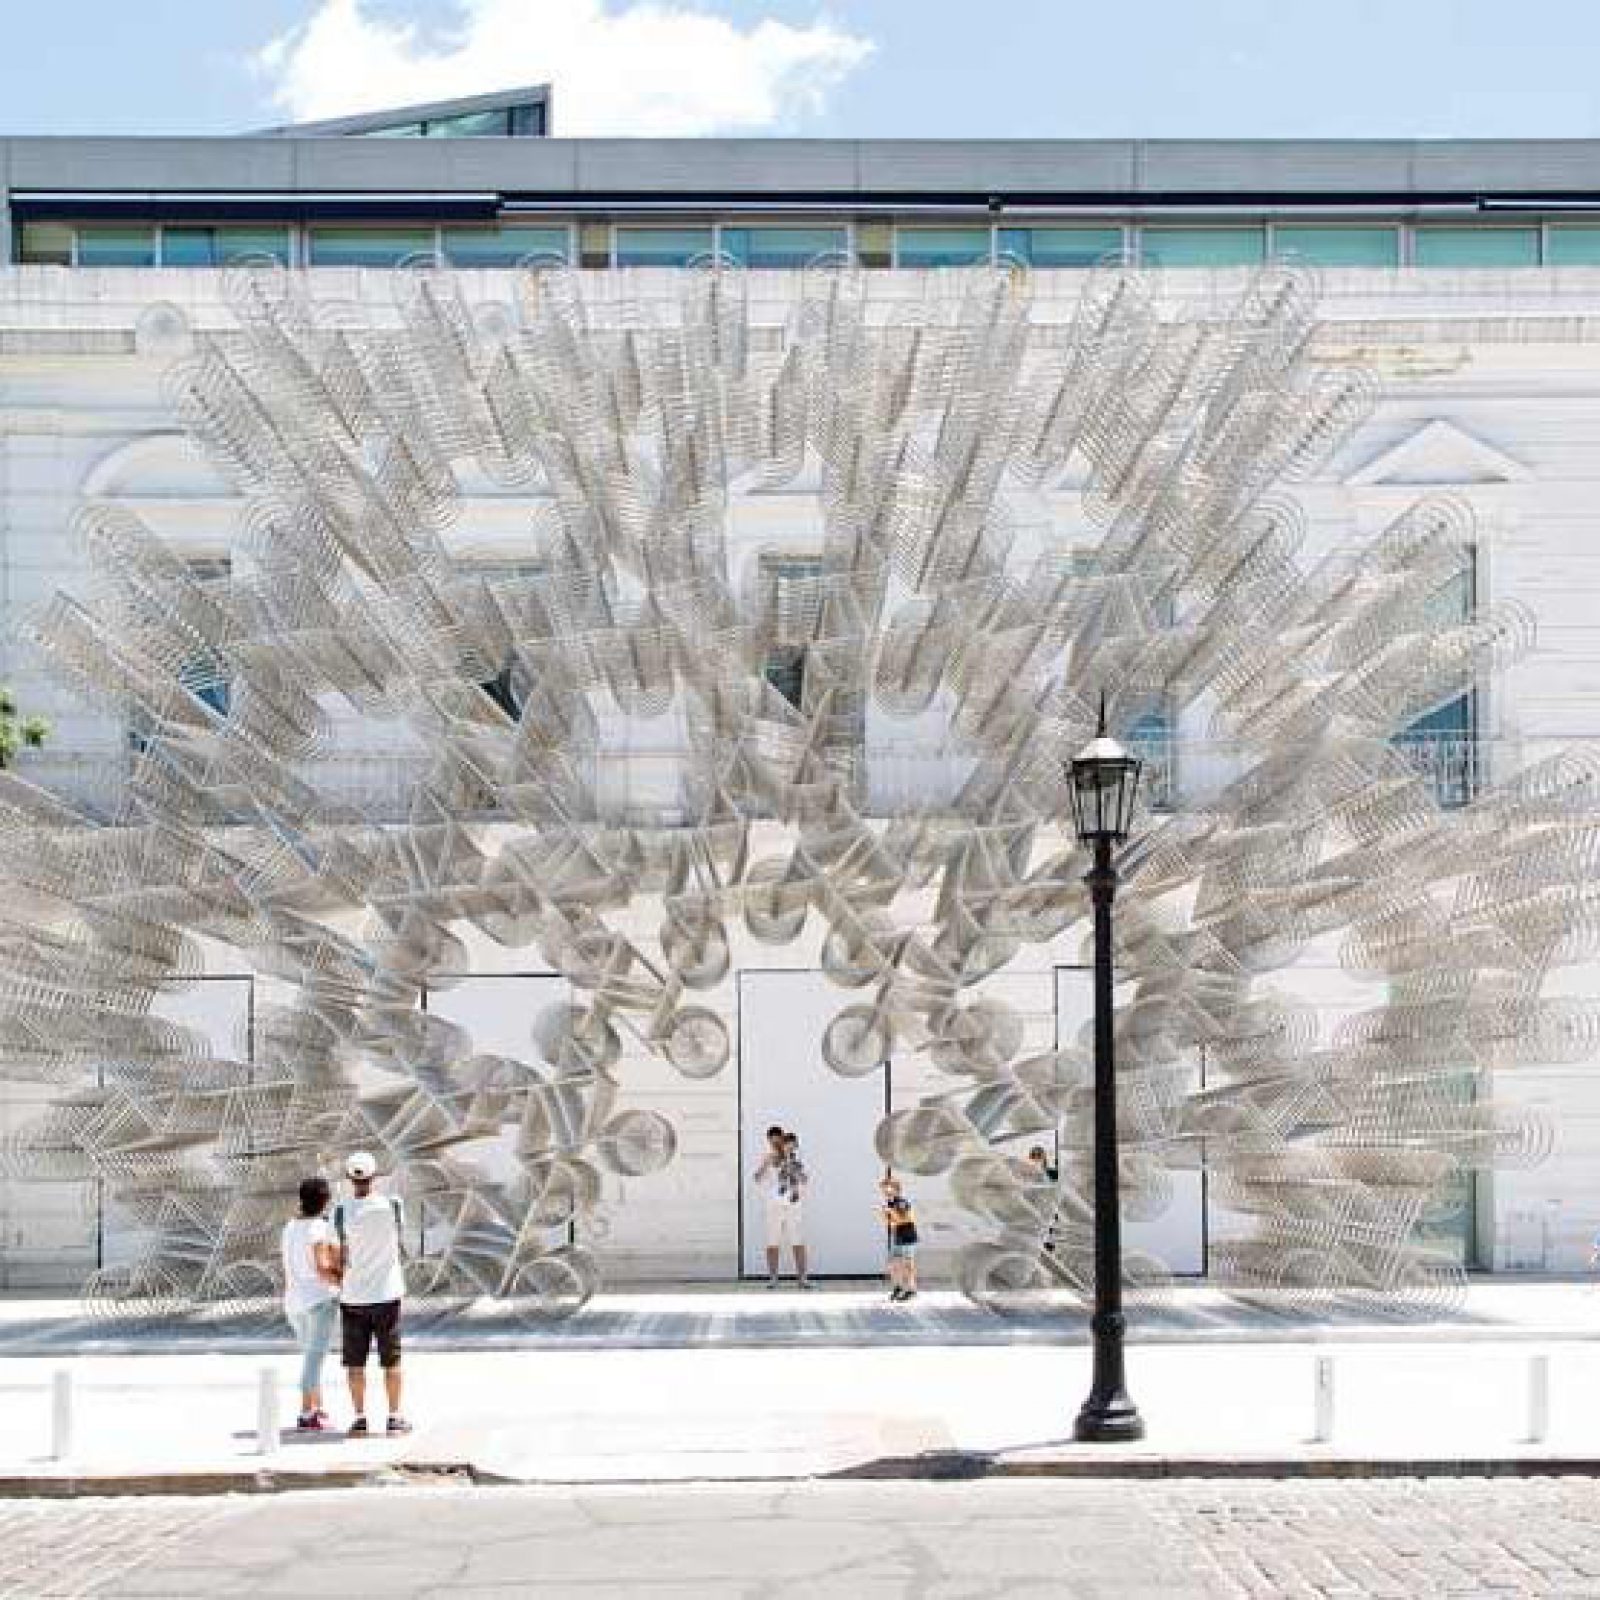 Ai Weiwei, “Forever”, 2015, 1254 bicicletas de acero, 950 x 1600 x 290 cm. Foto: Gian Paolo Minelli. Explanada de la Fundación Proa, 2017-2018